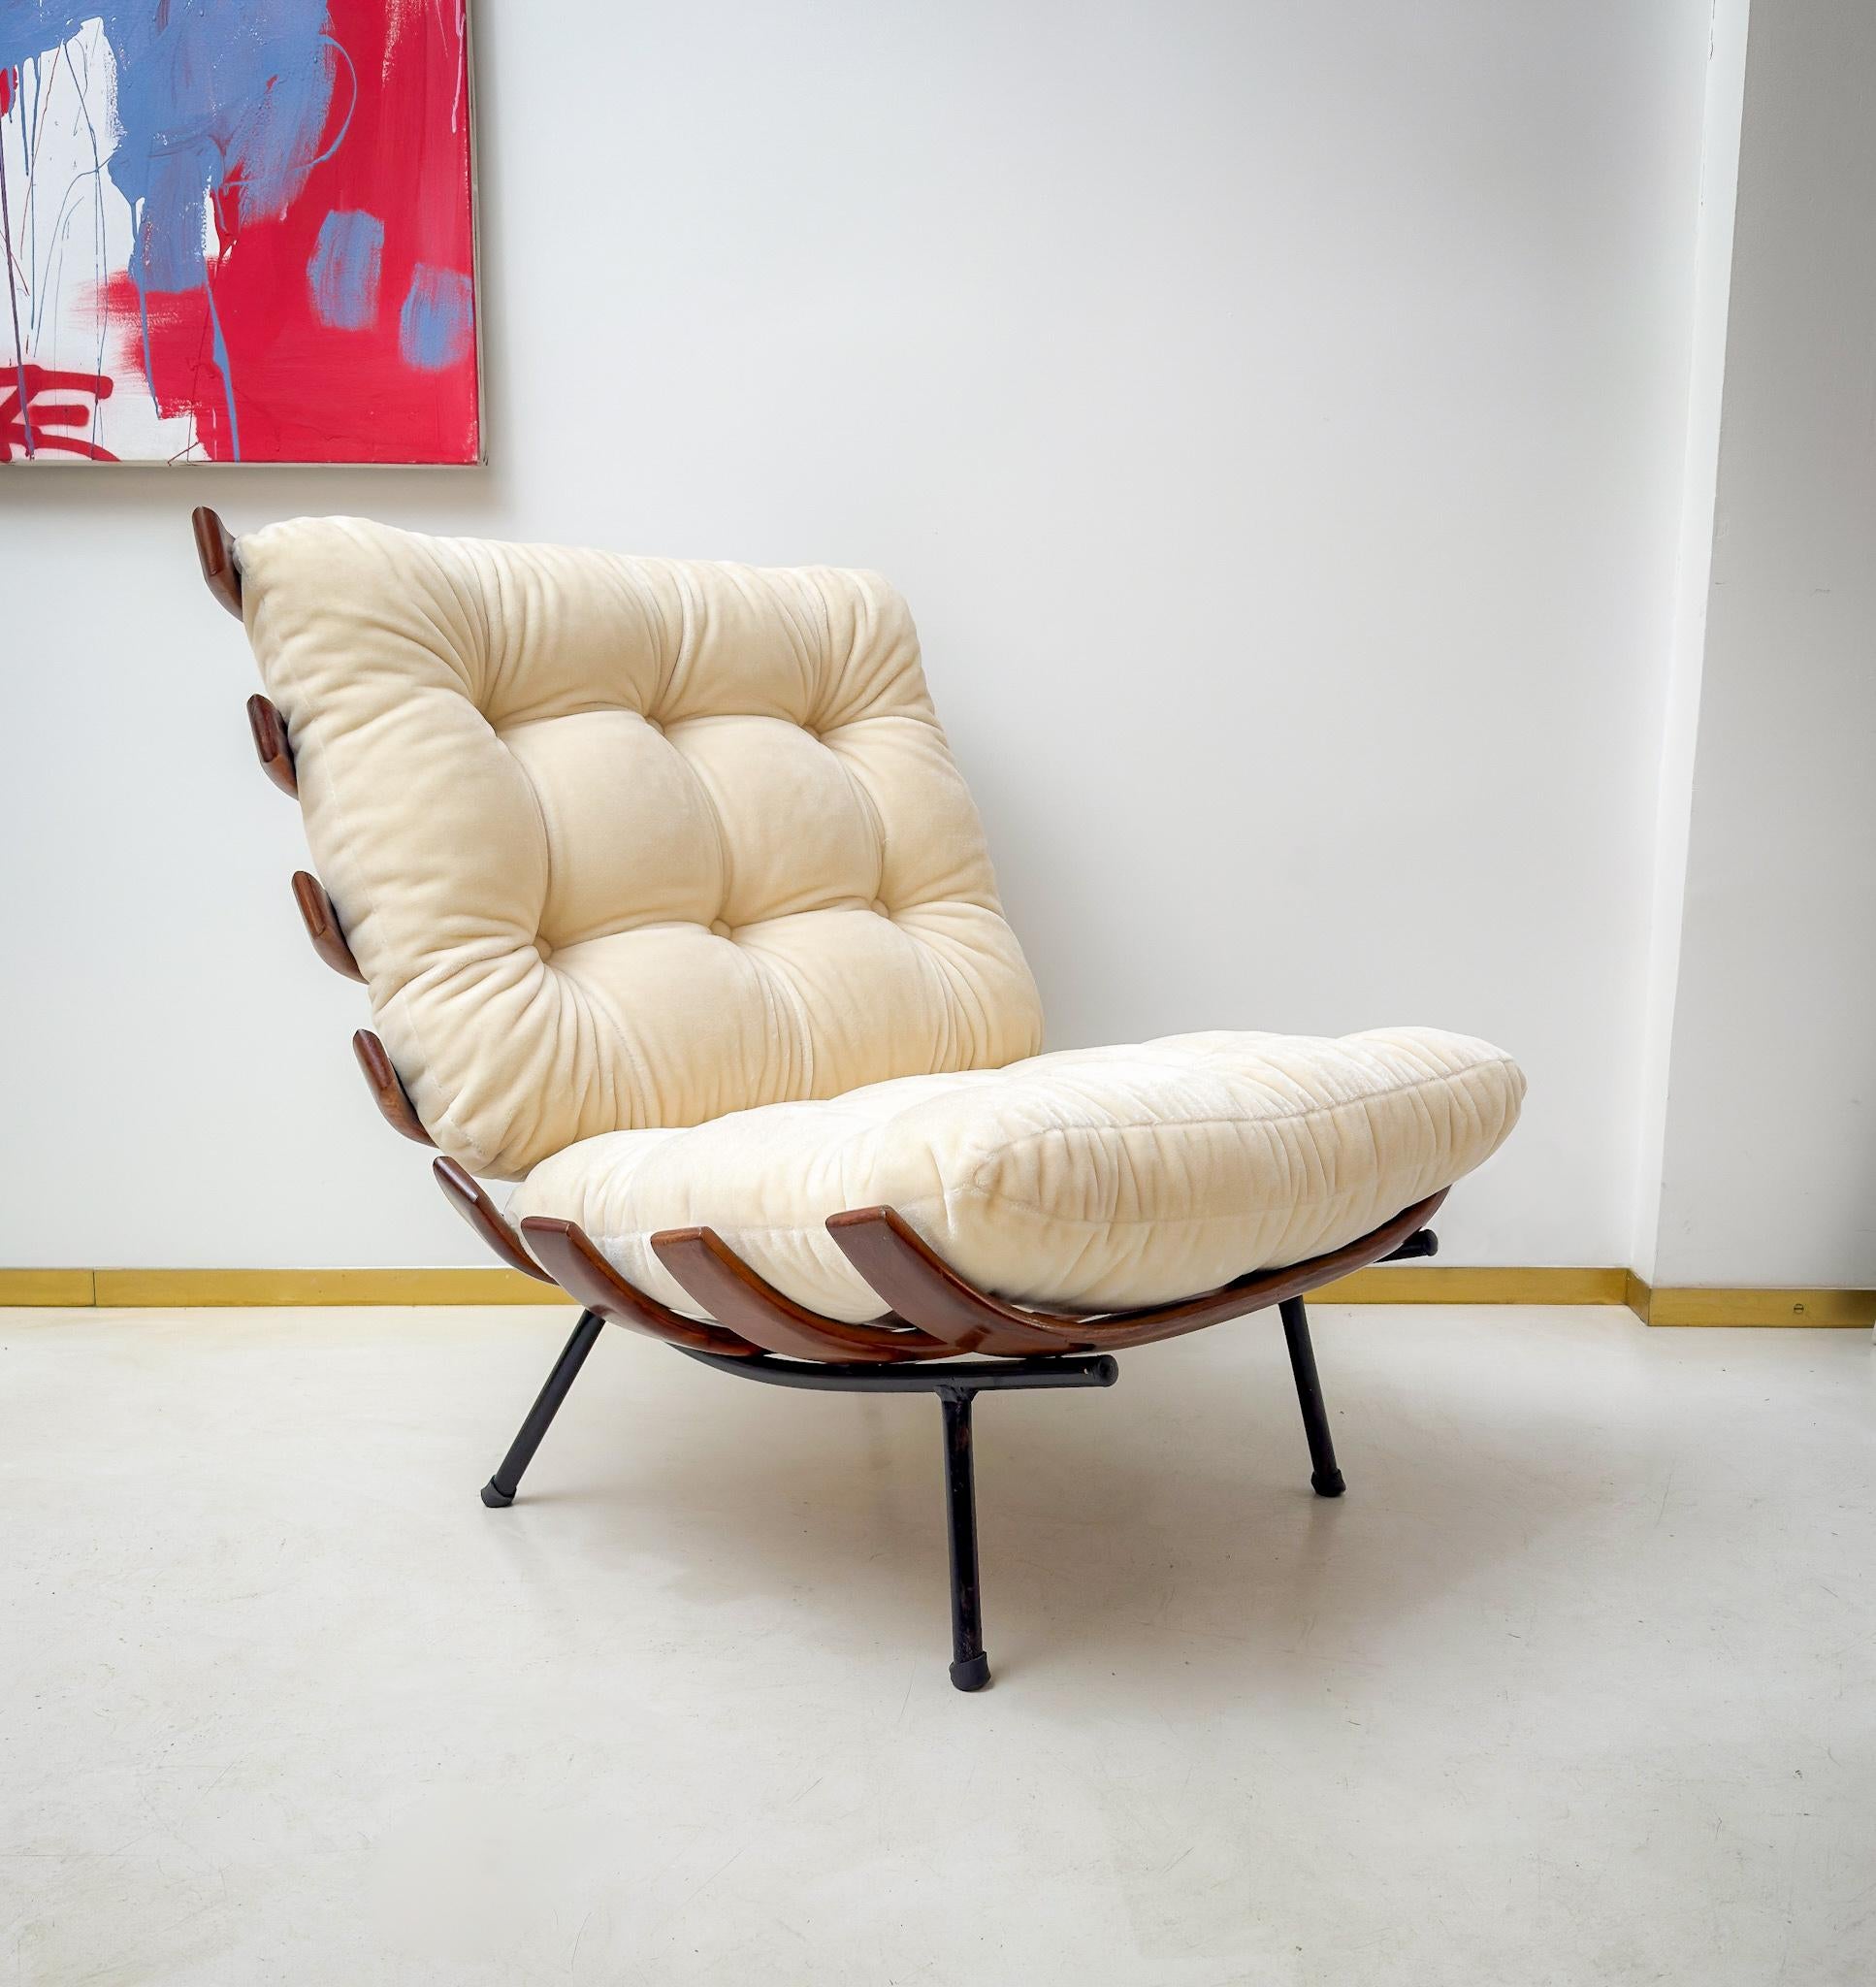 Le fauteuil Costale de Martin Eisler avec une date de fabrication de 1955 en bois de Imbuia. La structure un tubulaire de fer et les lattes sculptés en bois, tous les éléments structurels sont d'époque, les deux coussins sont neufs, tapissés avec un